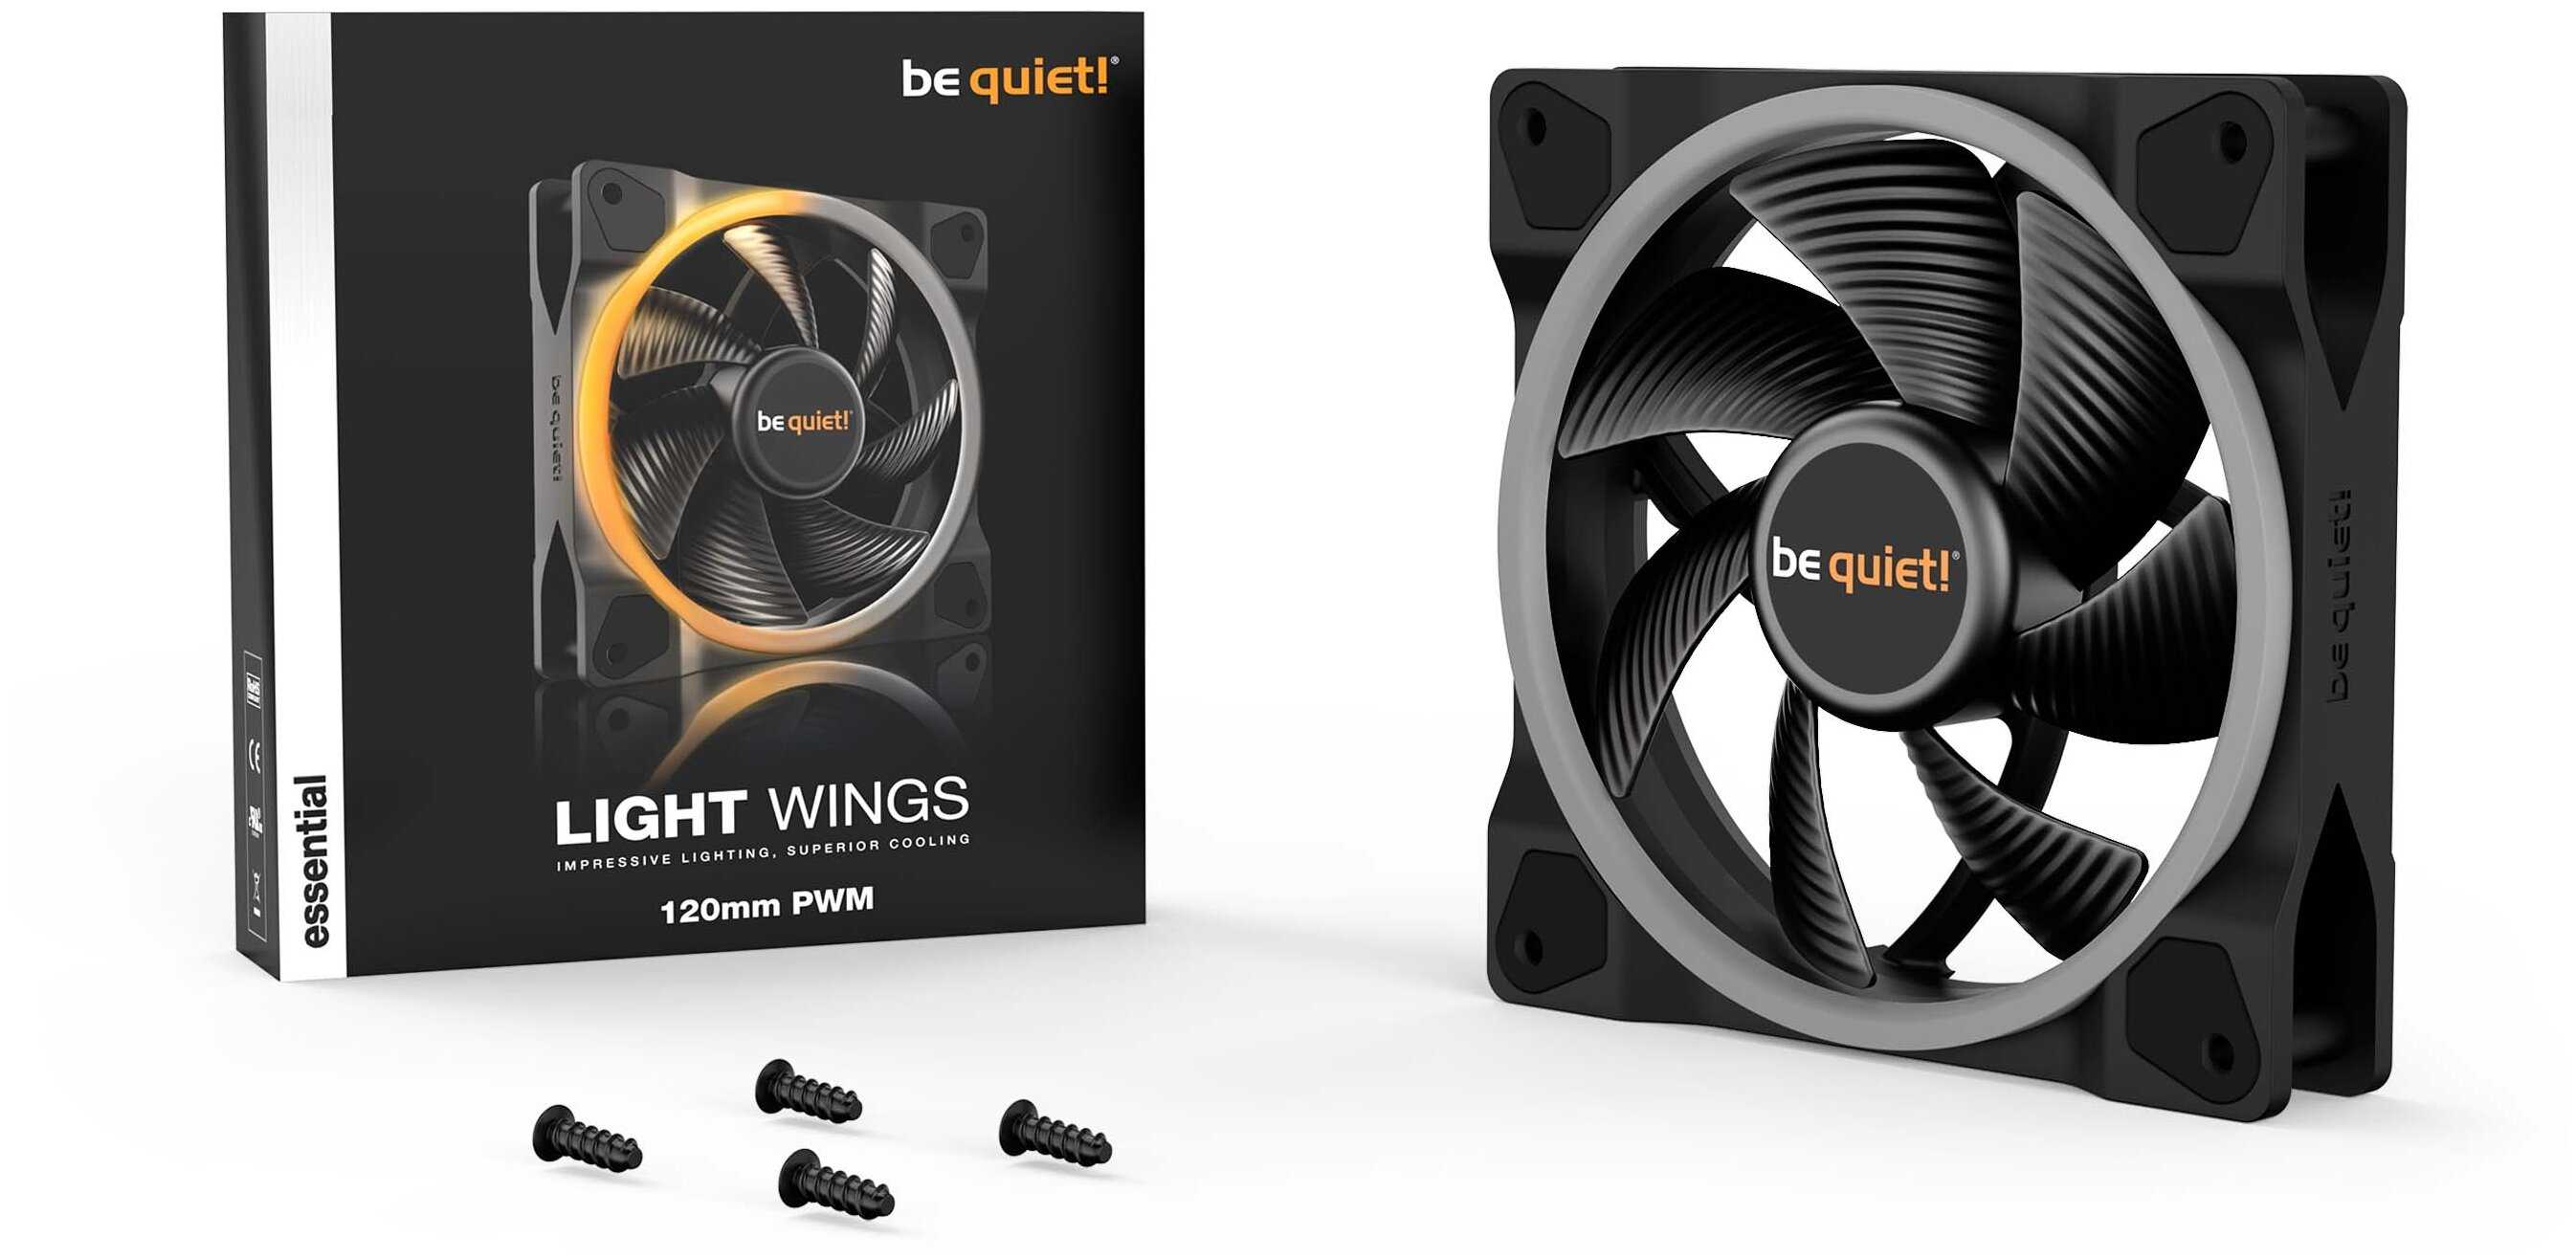 Тест и обзор: be quiet! shadow wings 2 120mm pwm и 140mm pwm - тихие корпусные вентиляторы второго поколения